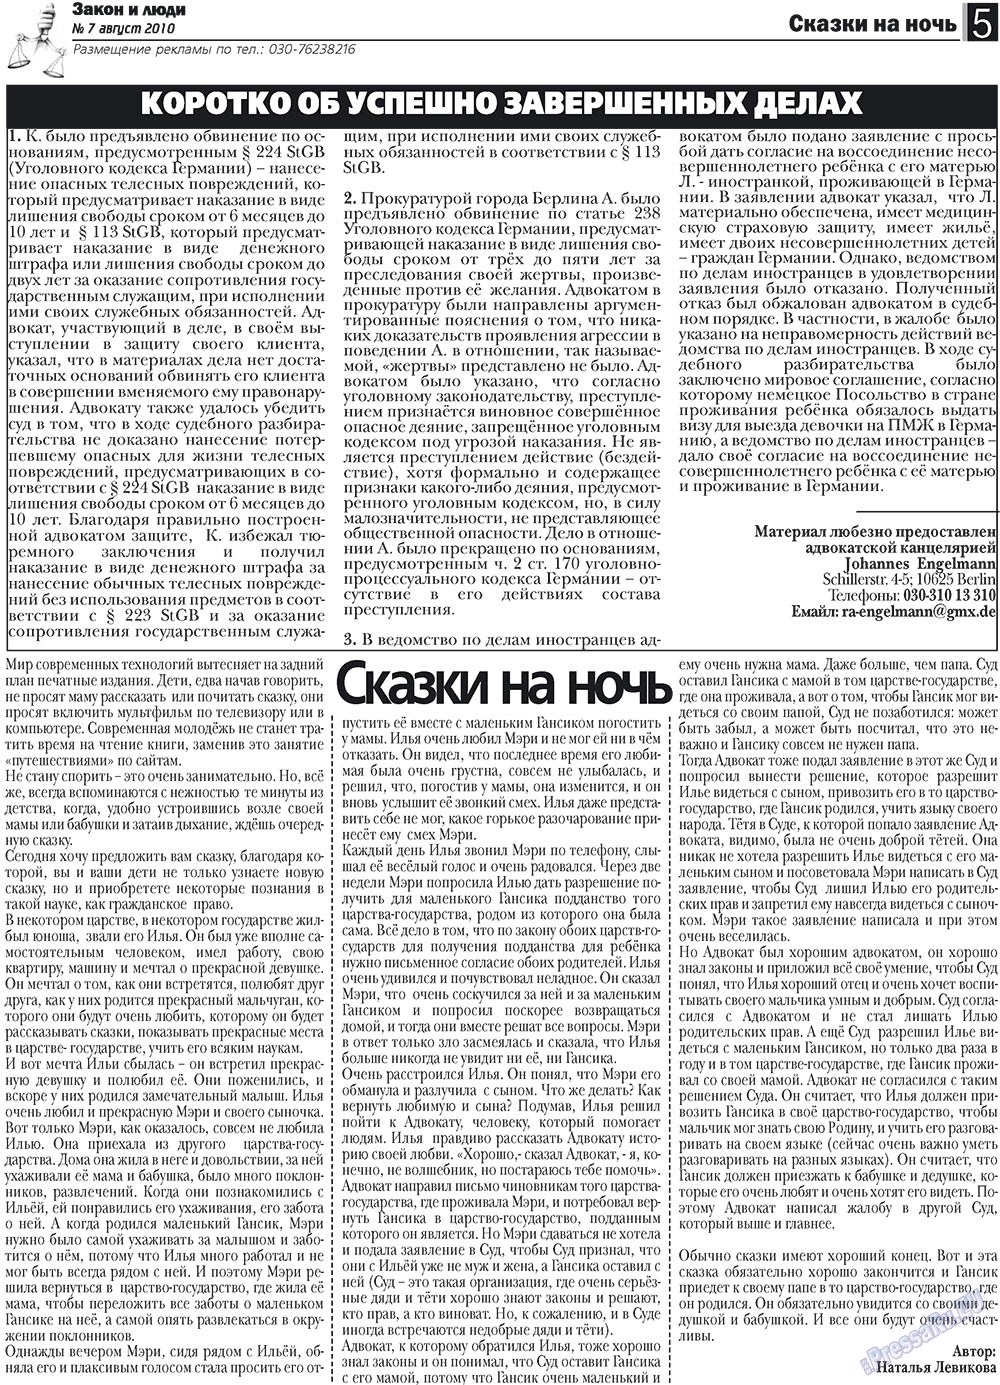 Закон и люди (газета). 2010 год, номер 7, стр. 5